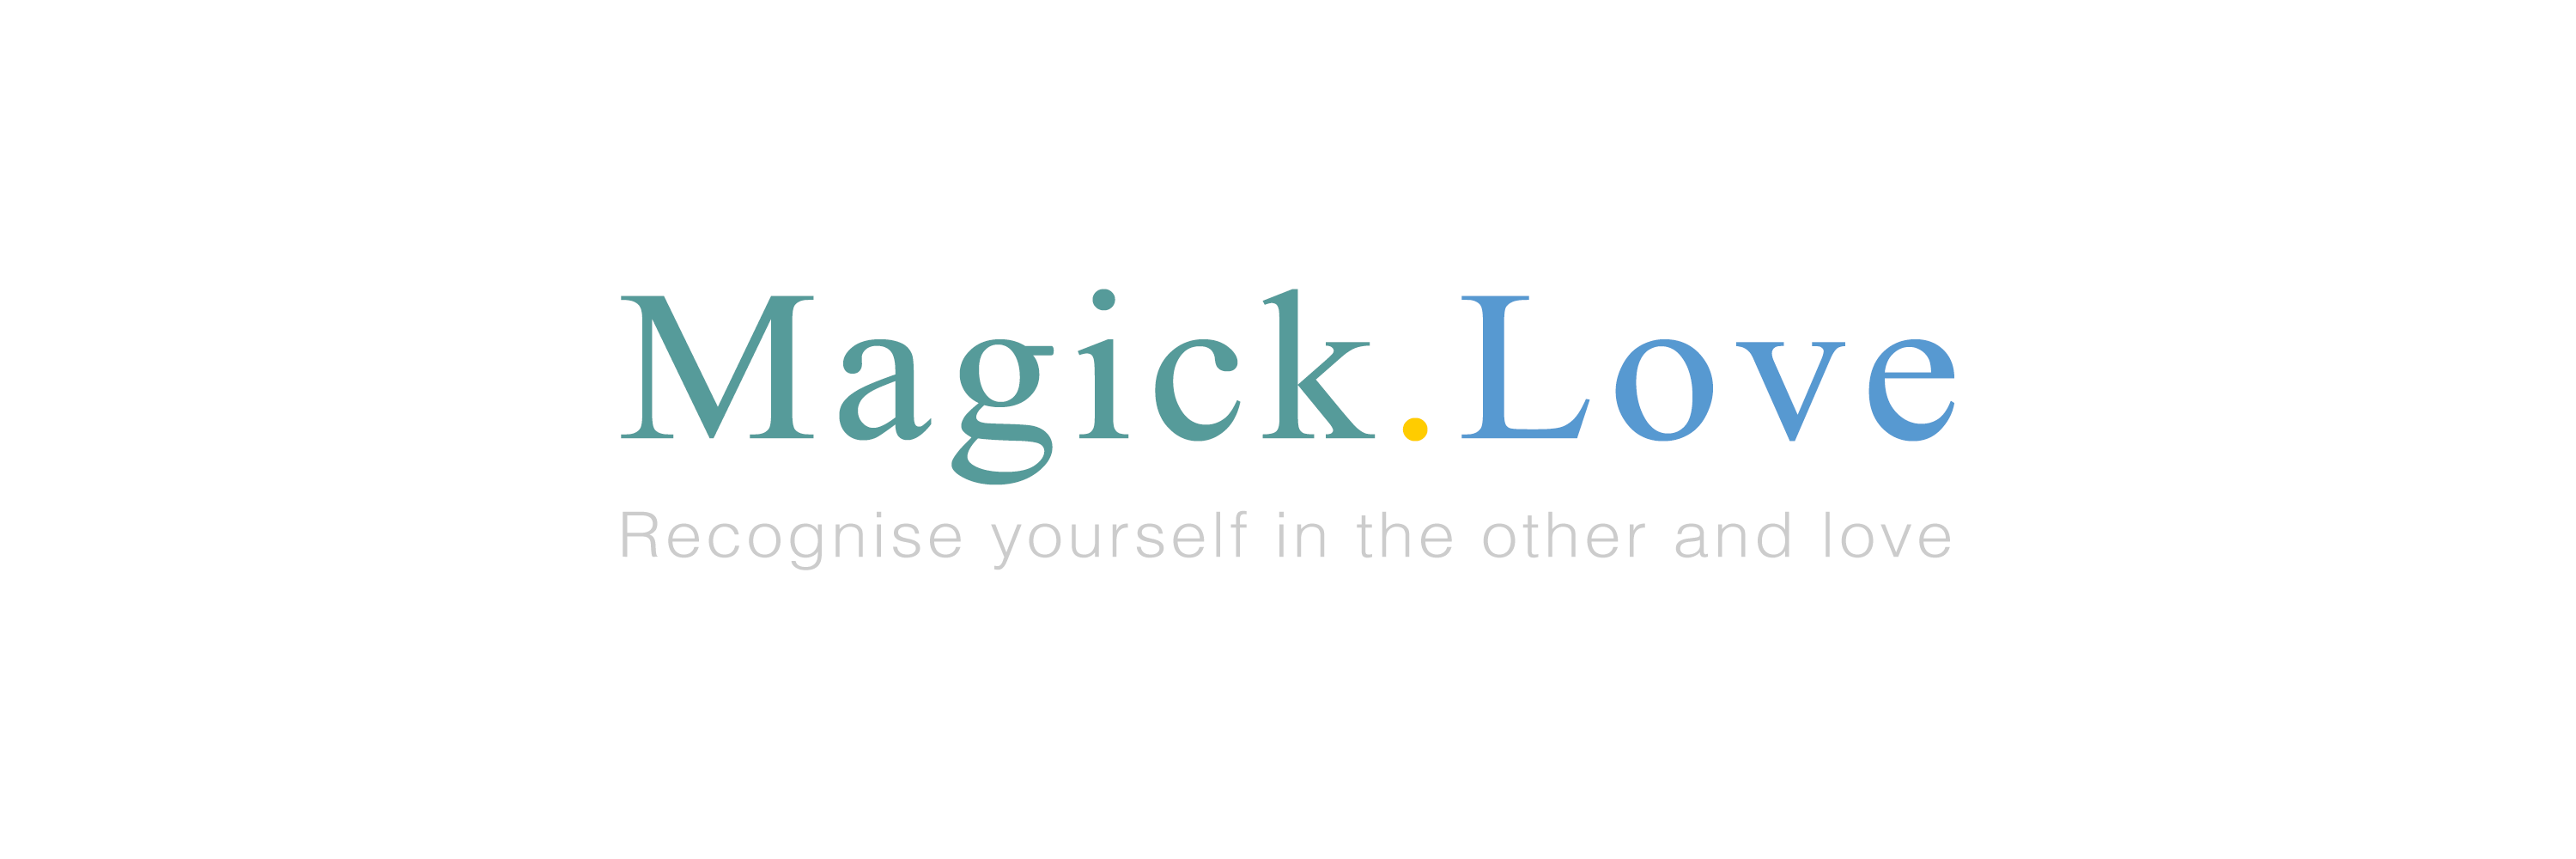 Magick.Love / startup von Berlin / Background